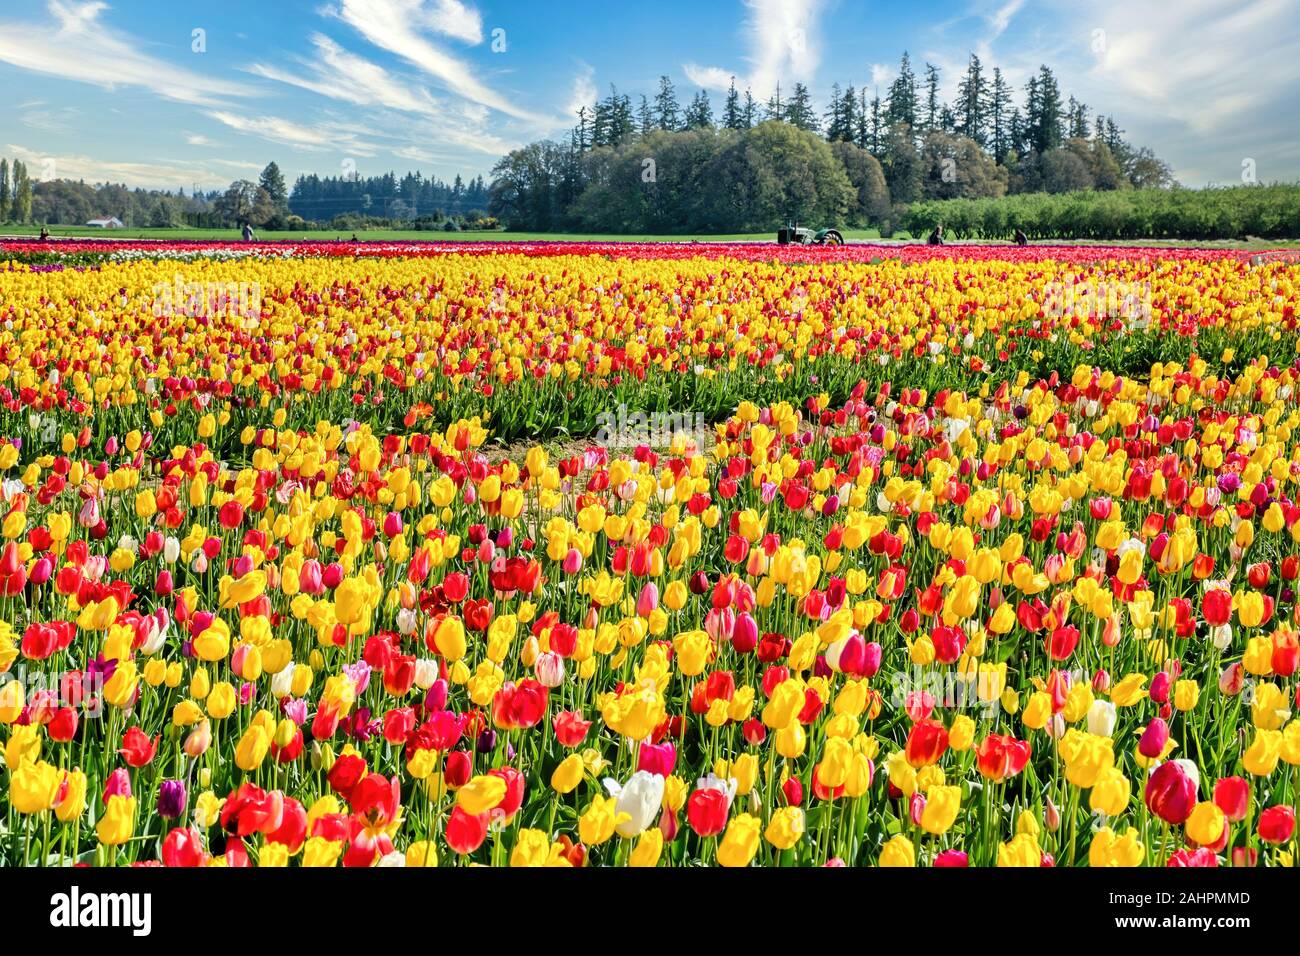 Die jährlichen Tulip Fest am Holzschuh Tulip Farm, in Woodburn, Oregon gelegen, wird am 20. März 2020 beginnen und in der ersten Woche im Mai. Stockfoto